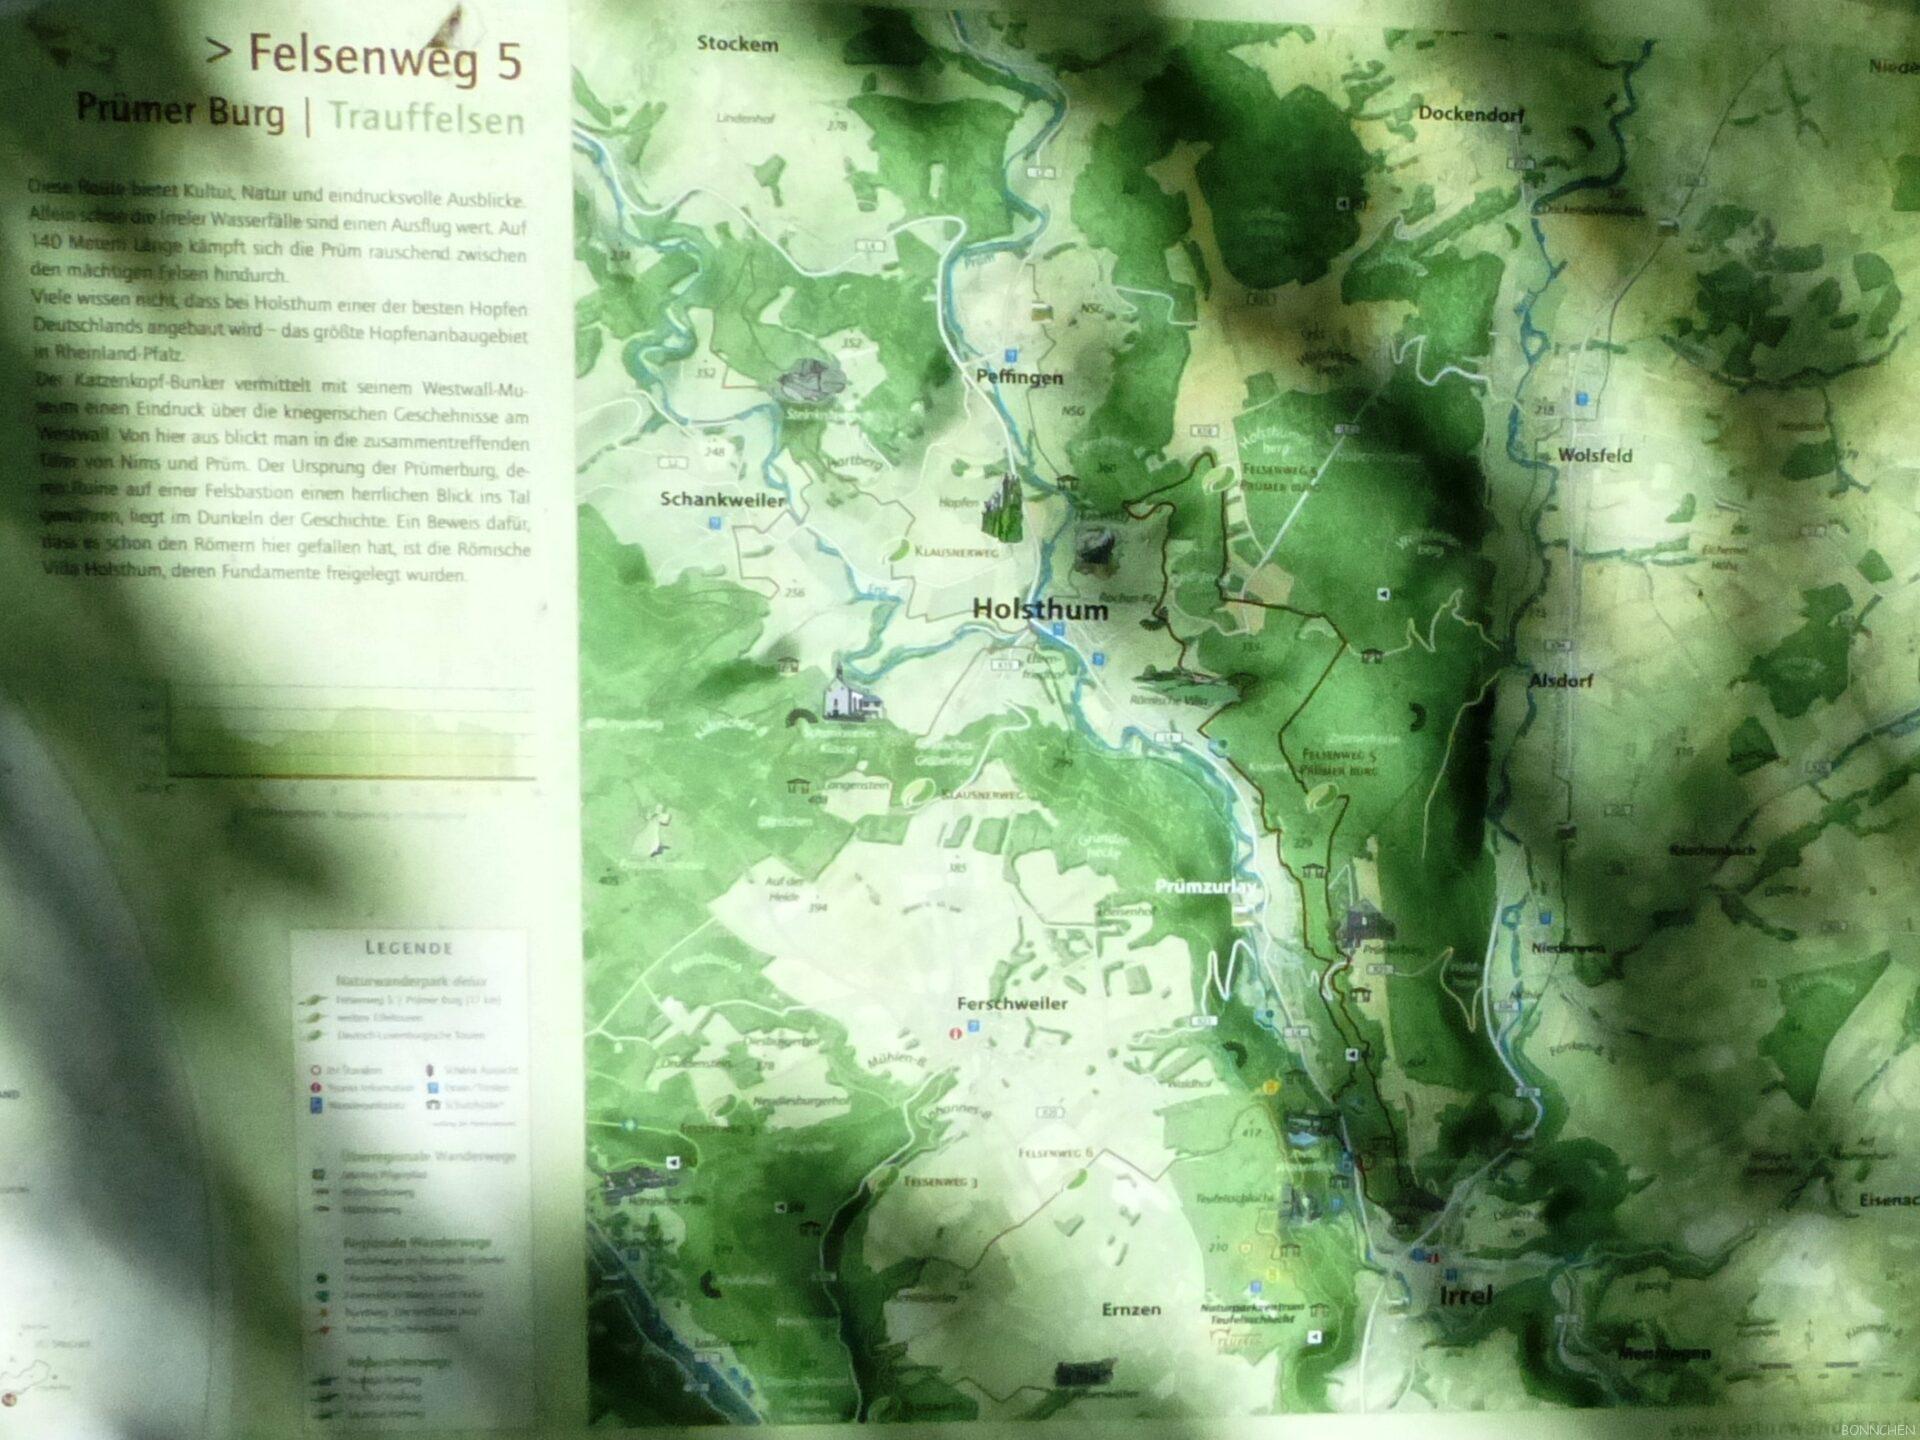 Felsenweg 5 mit Prümer Burg & Trauffelsen Karte der Region rund um Holsthum & Irrel